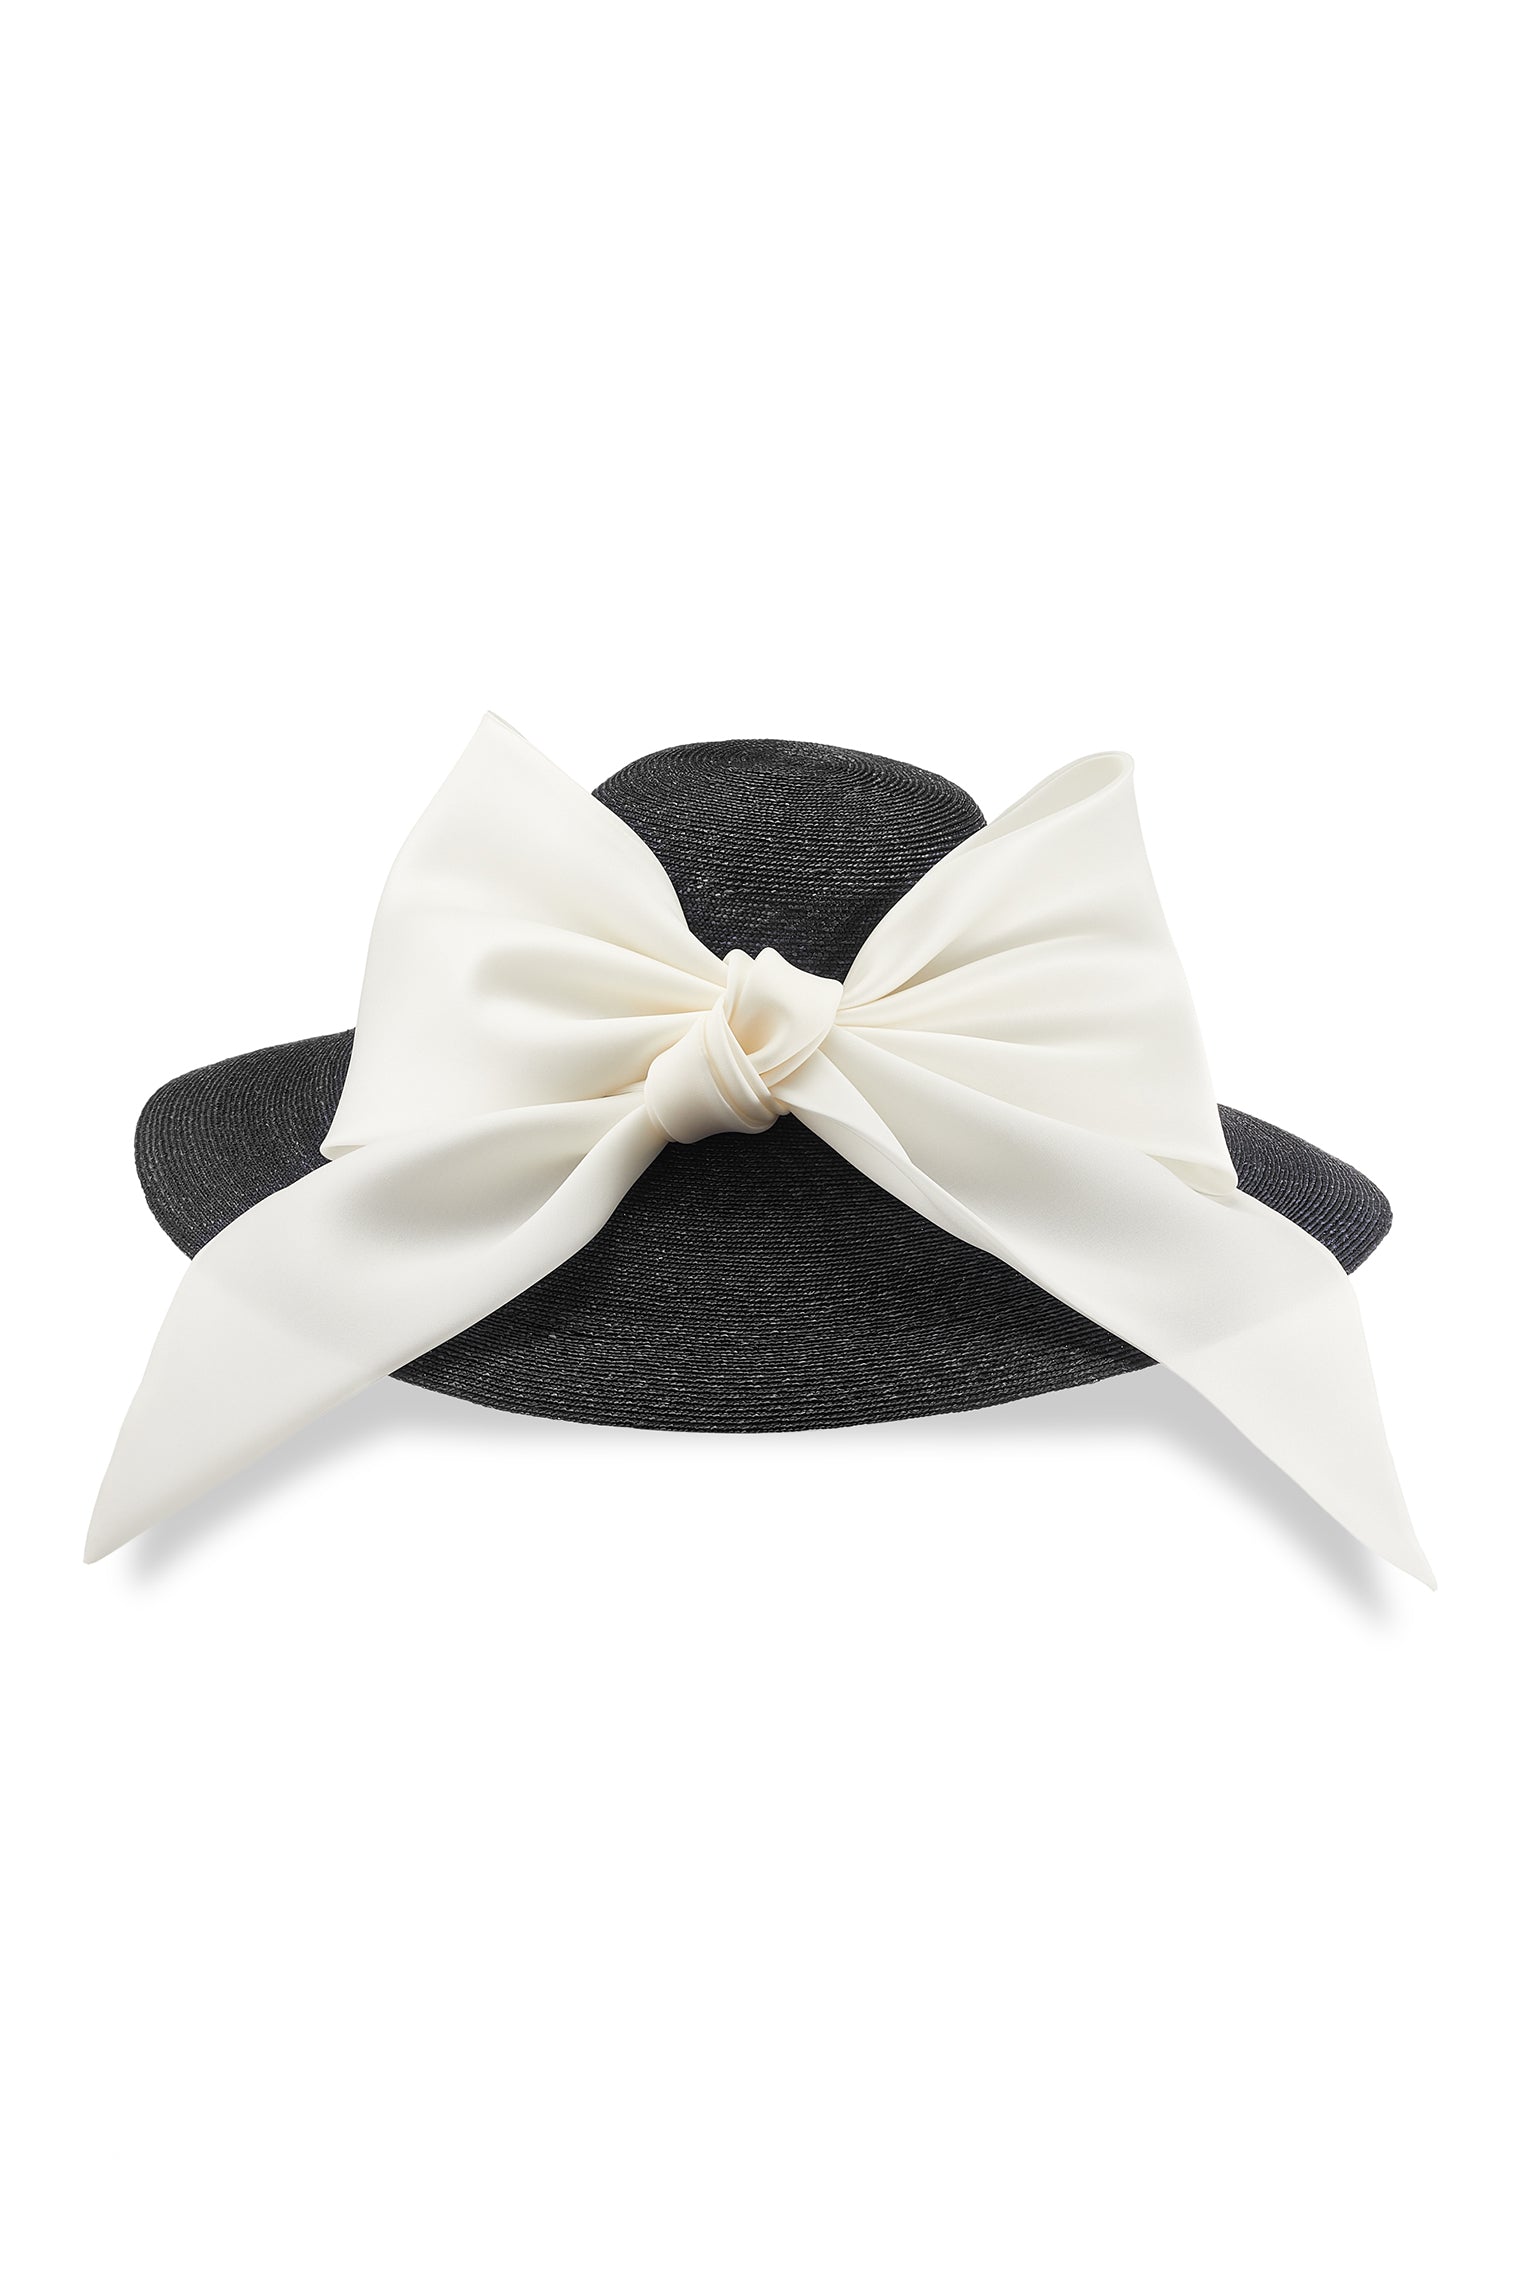 Darjeeling Black Wide Brim Hat - Hats for Tall People - Lock & Co. Hatters London UK